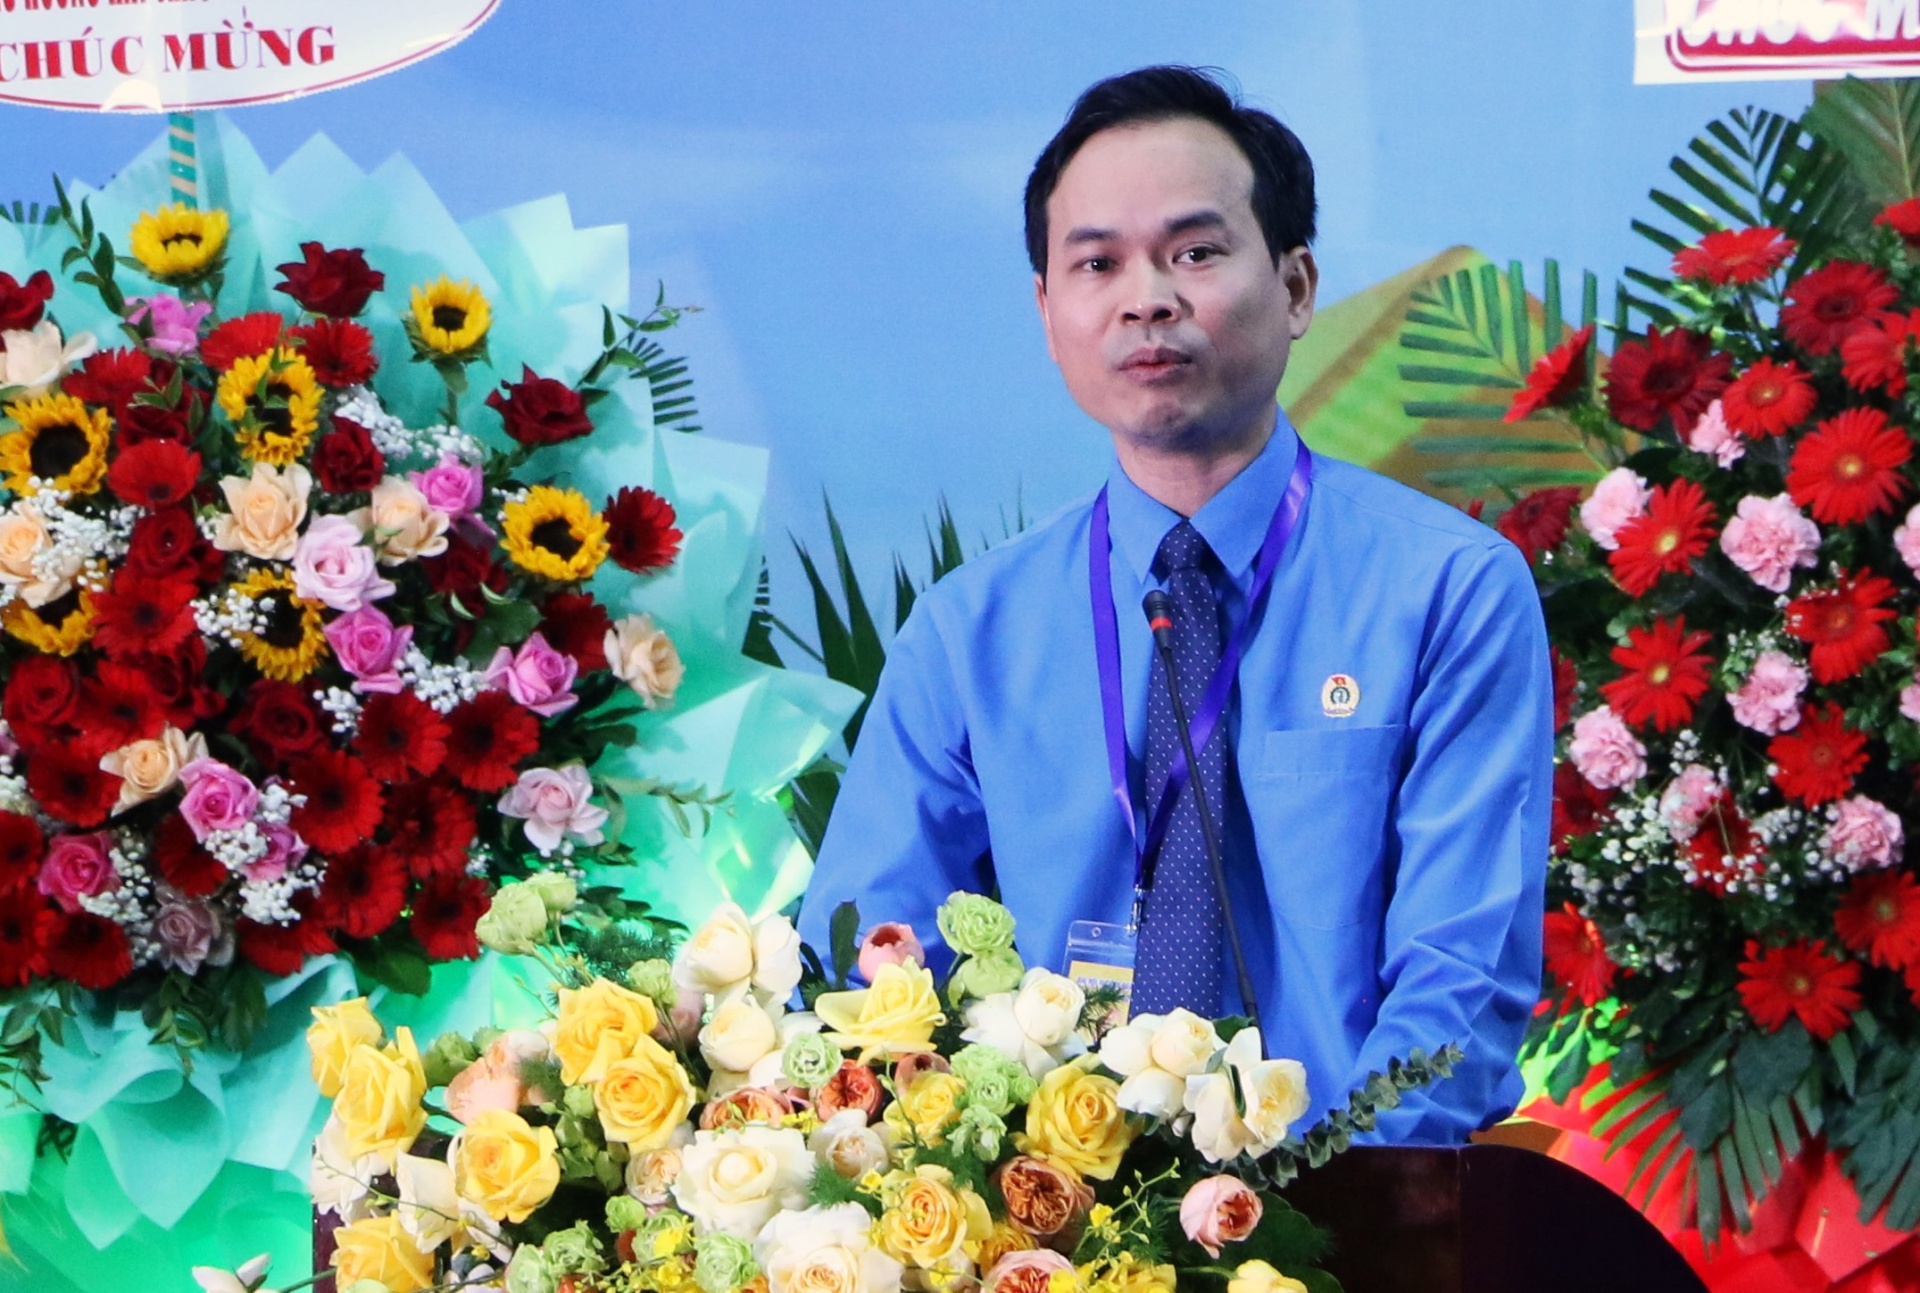 Đồng chí Lữ Trọng Phương tái đắc cử Chủ tịch LĐLĐ quận Hải Châu khóa VI